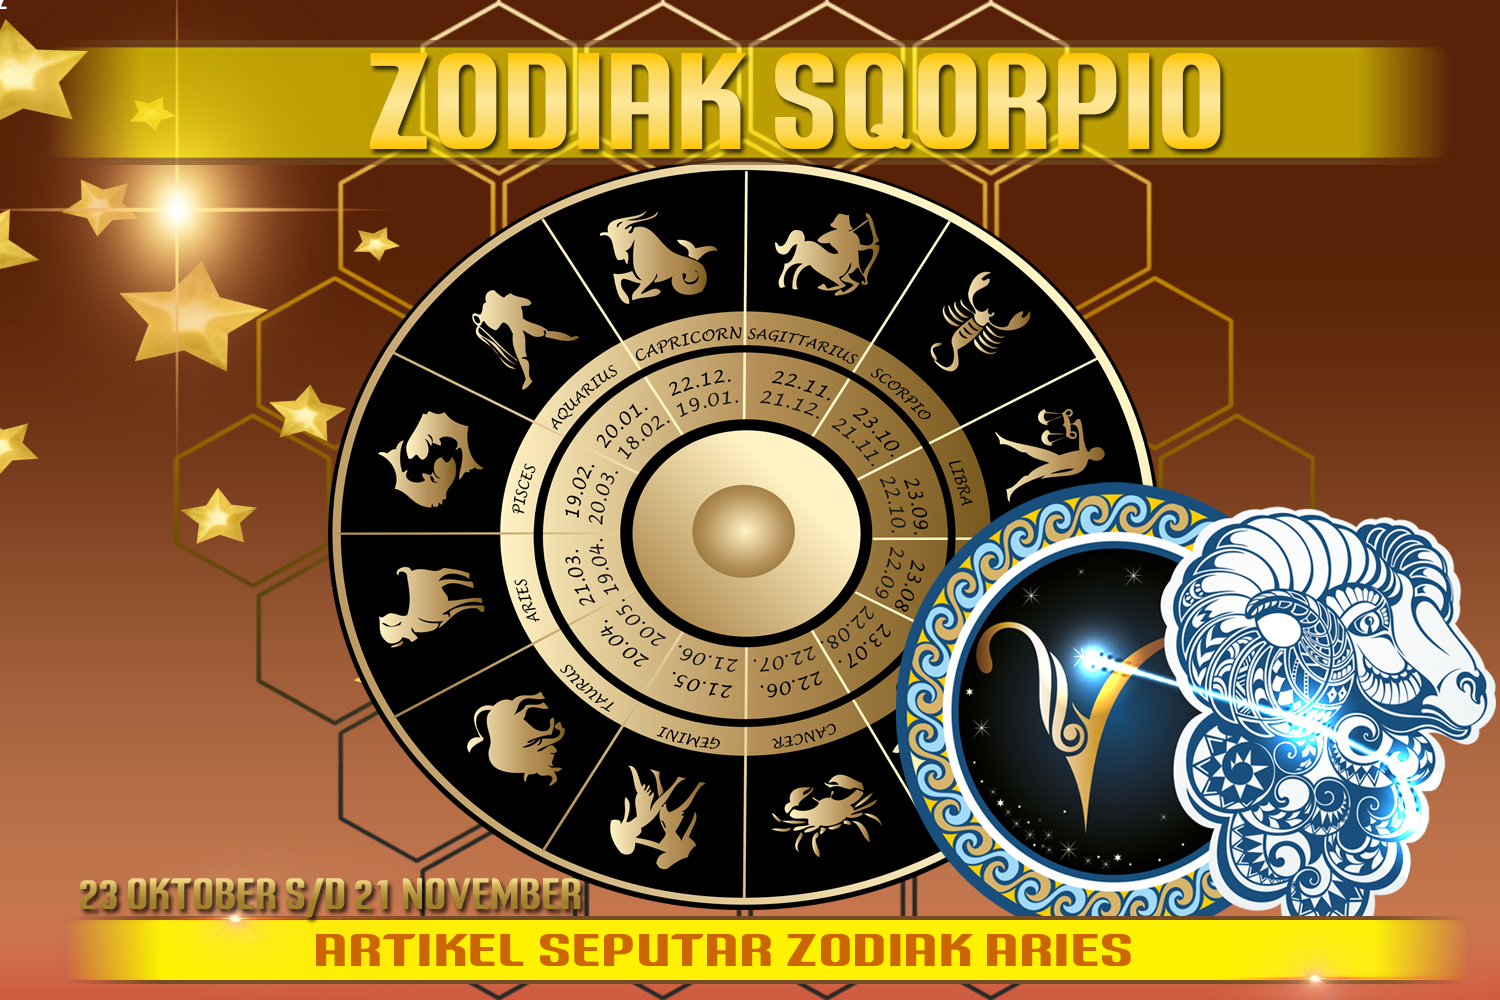 Sifat Zodiak Scorpio